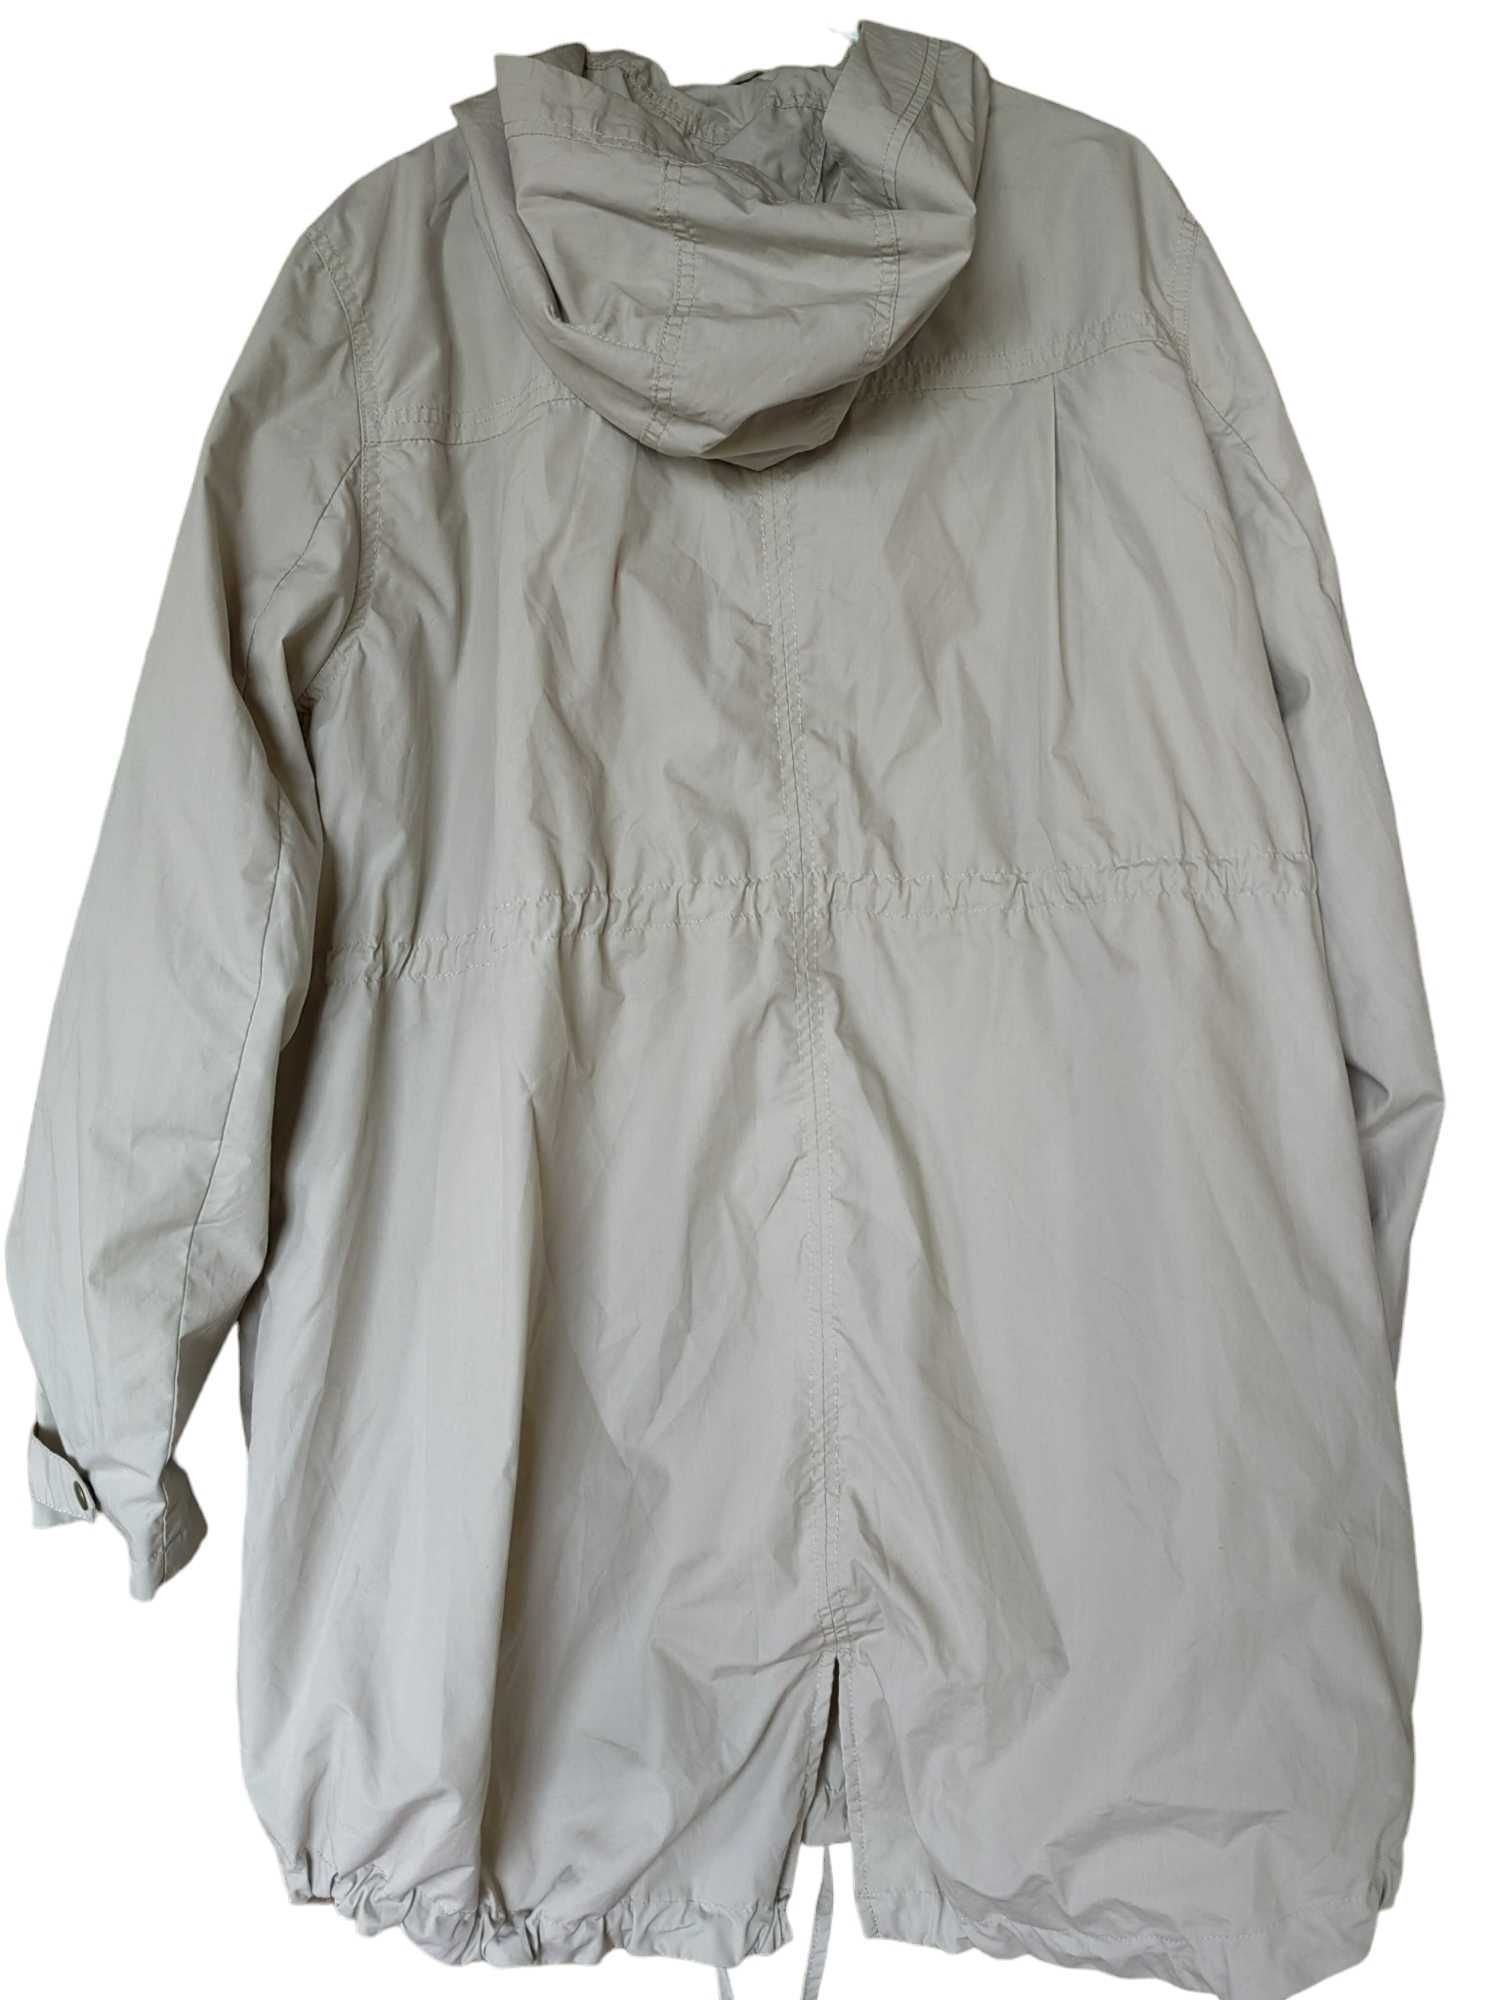 Дамско яке за бременни с качулка H&M, Бежово, 86х65 см, XL